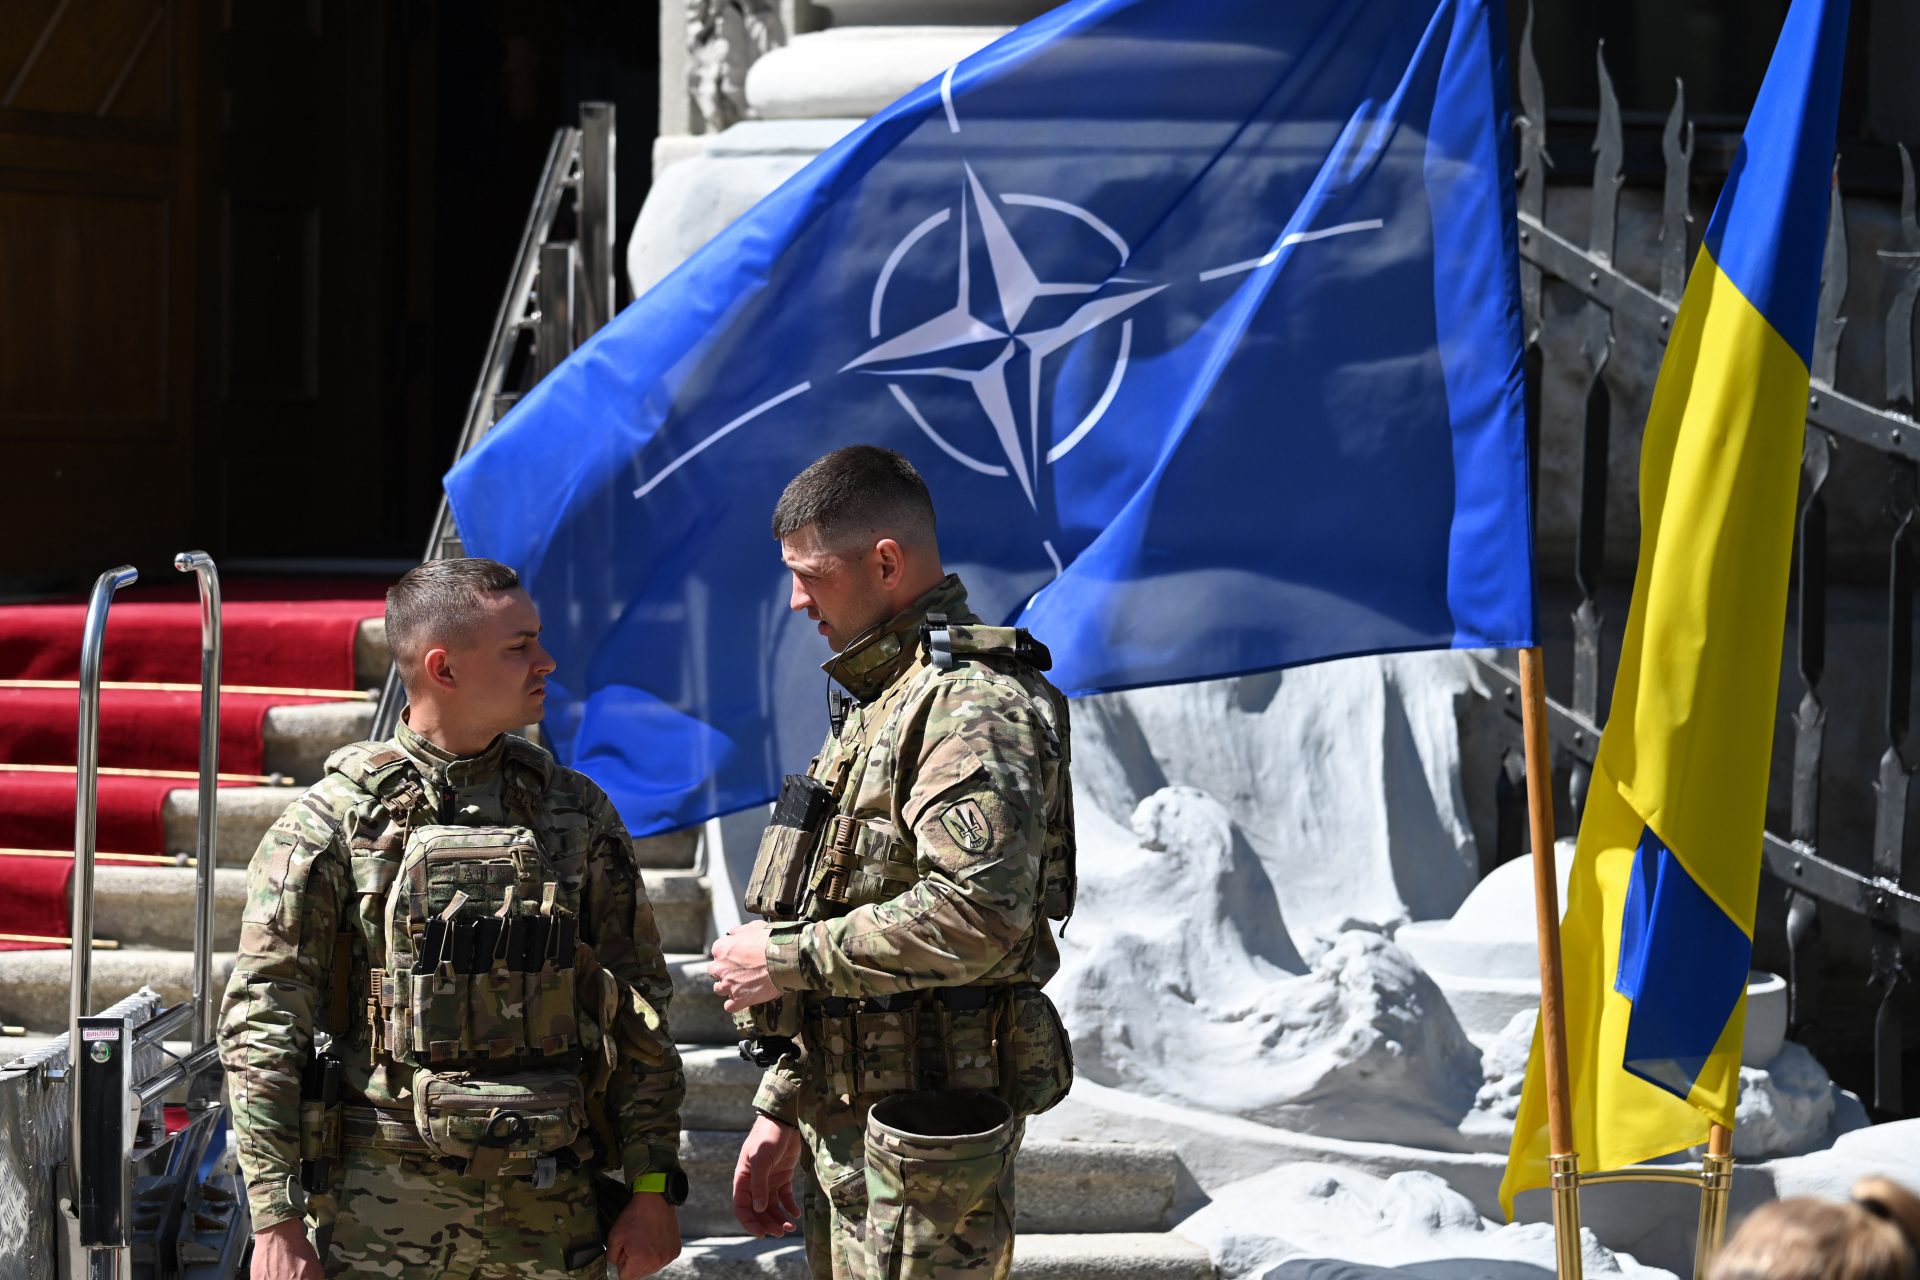 Wird der dritte Weltkrieg ausgelöst, wenn westliche Länder Truppen in die Ukraine schicken?